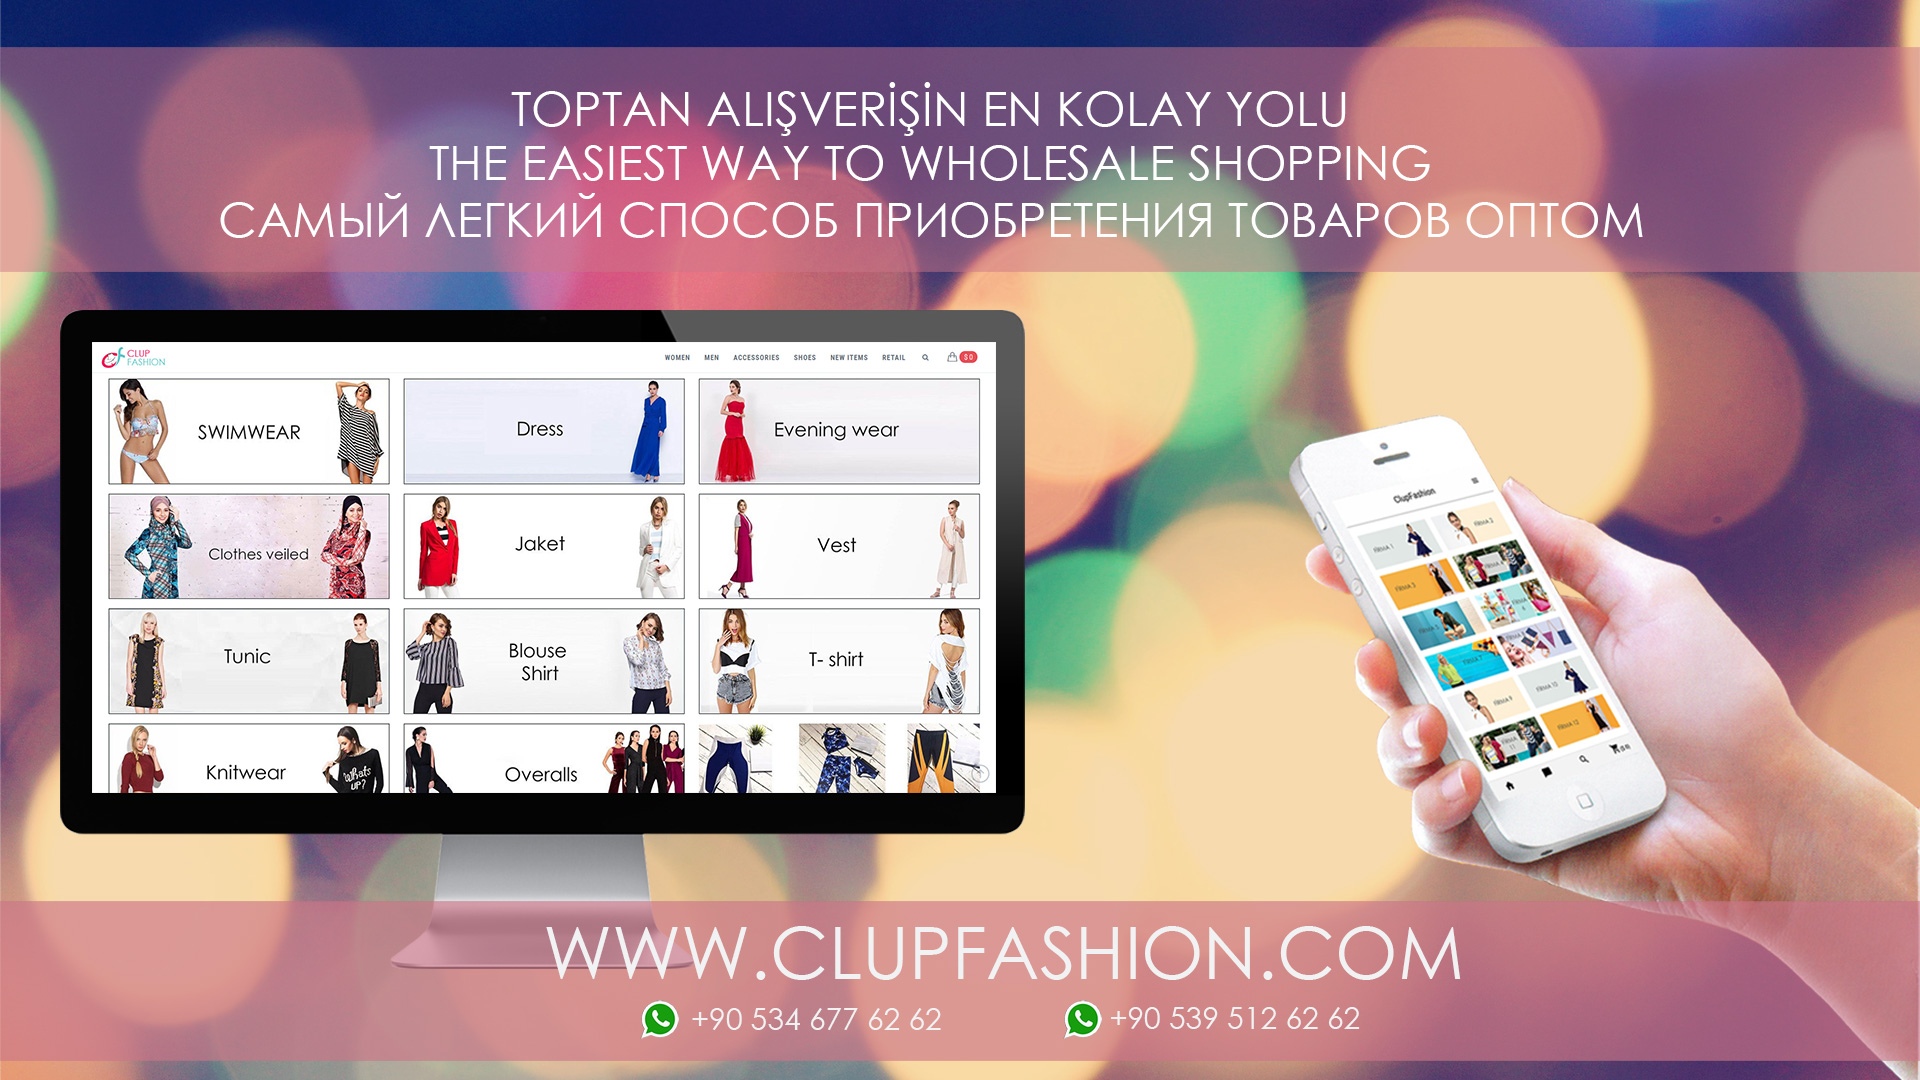 Clup Fashion Koleksiyon   2014